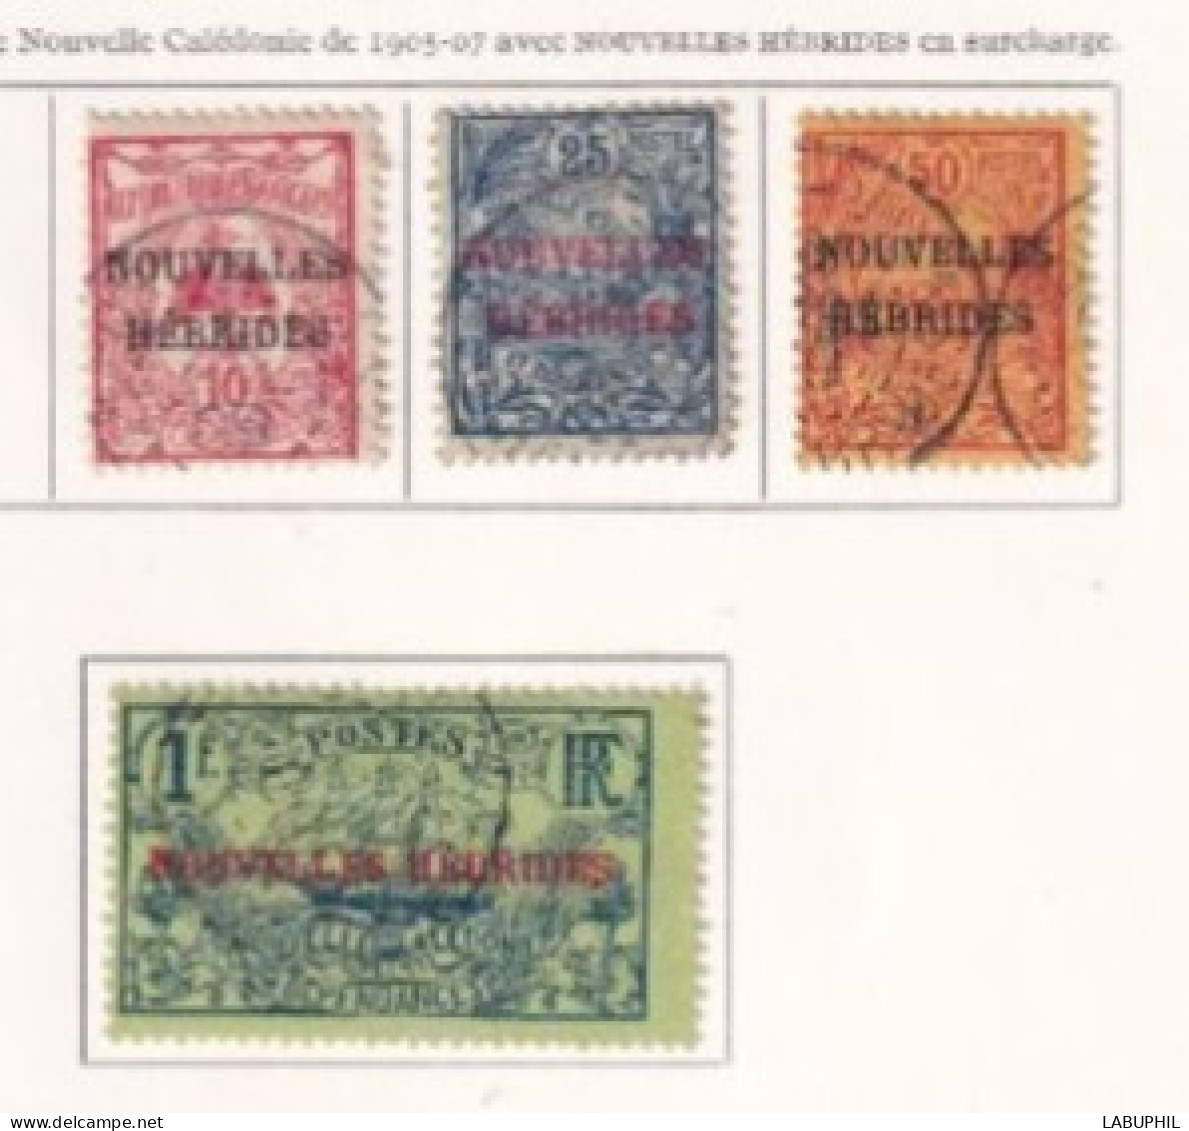 NOUVELLES HEBRIDES Dispersion D'une Collection Oblitéré Et Mlh  1908 - Gebraucht